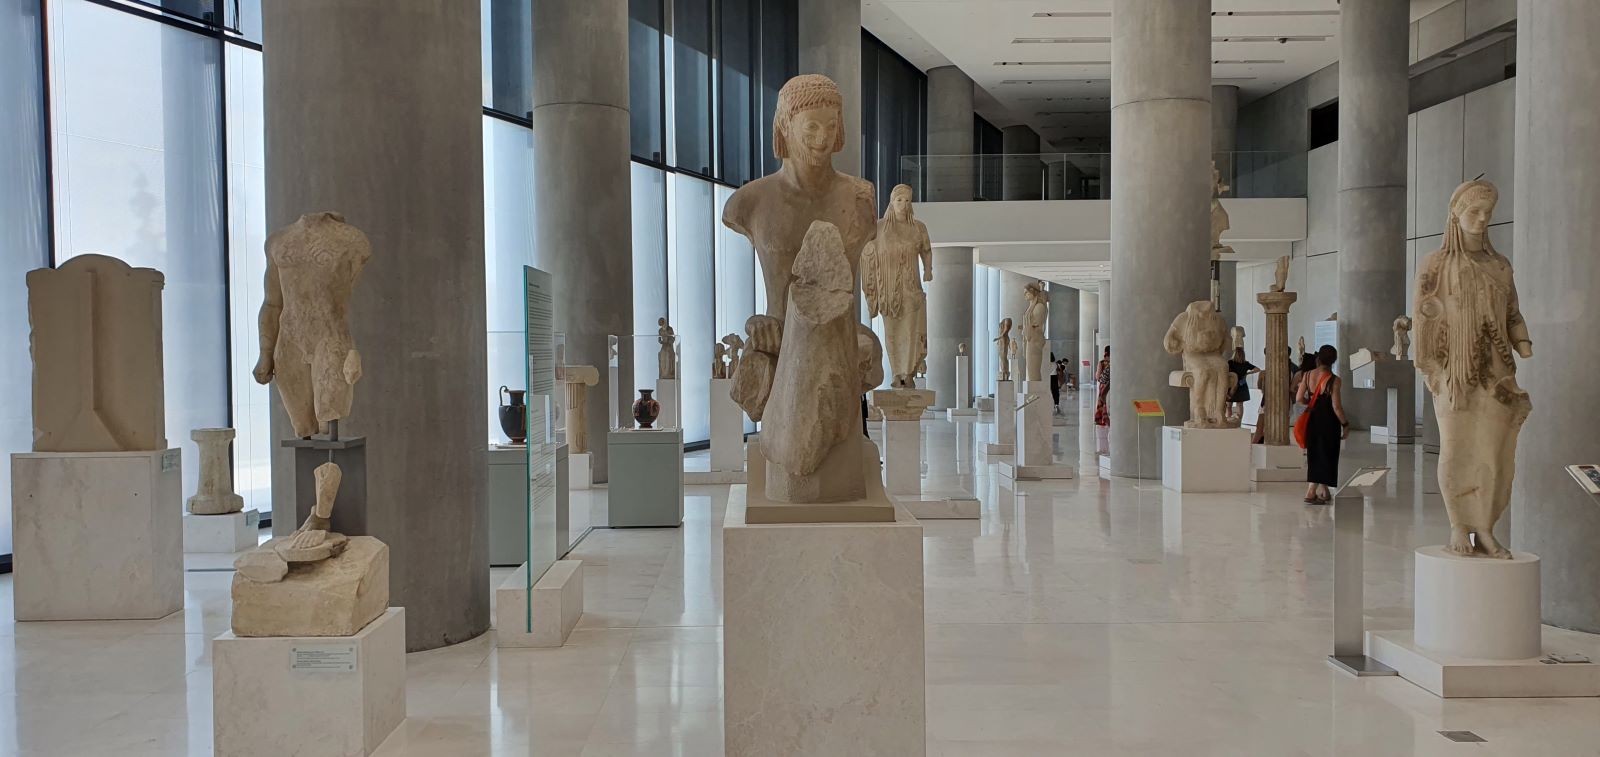 Άποψη της Αίθουσας Αρχαϊκής εποχής στο Μουσείο Ακρόπολης